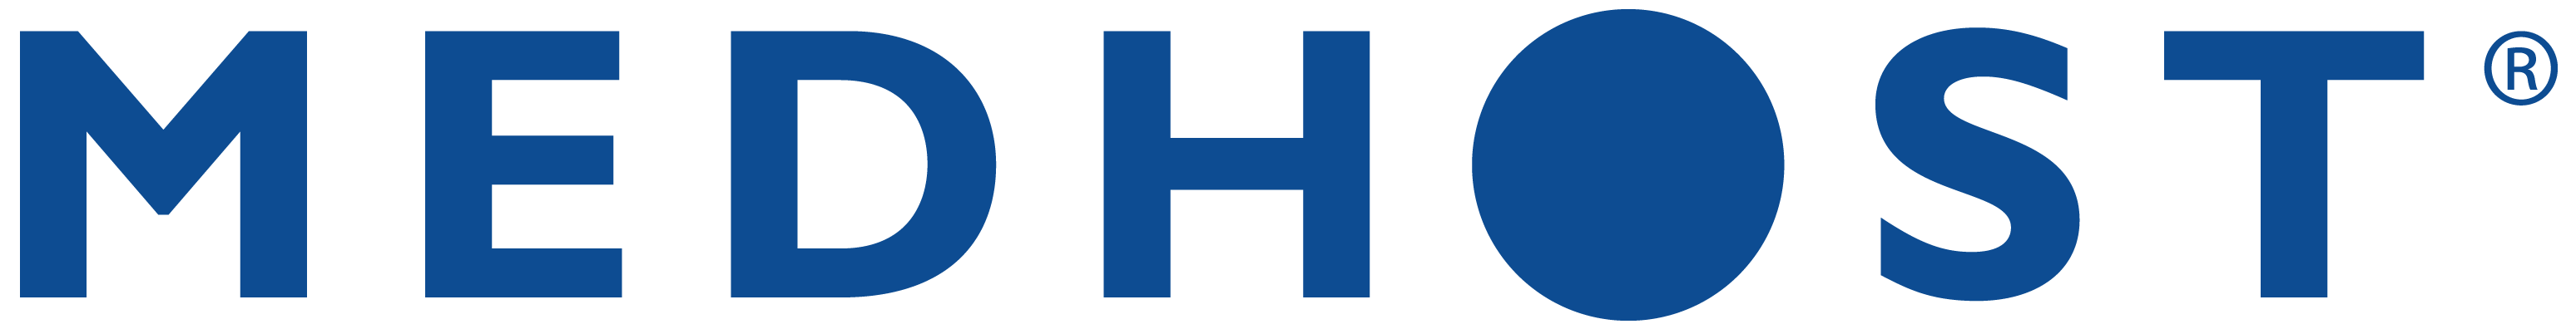 MEDHOST-Logo-Large